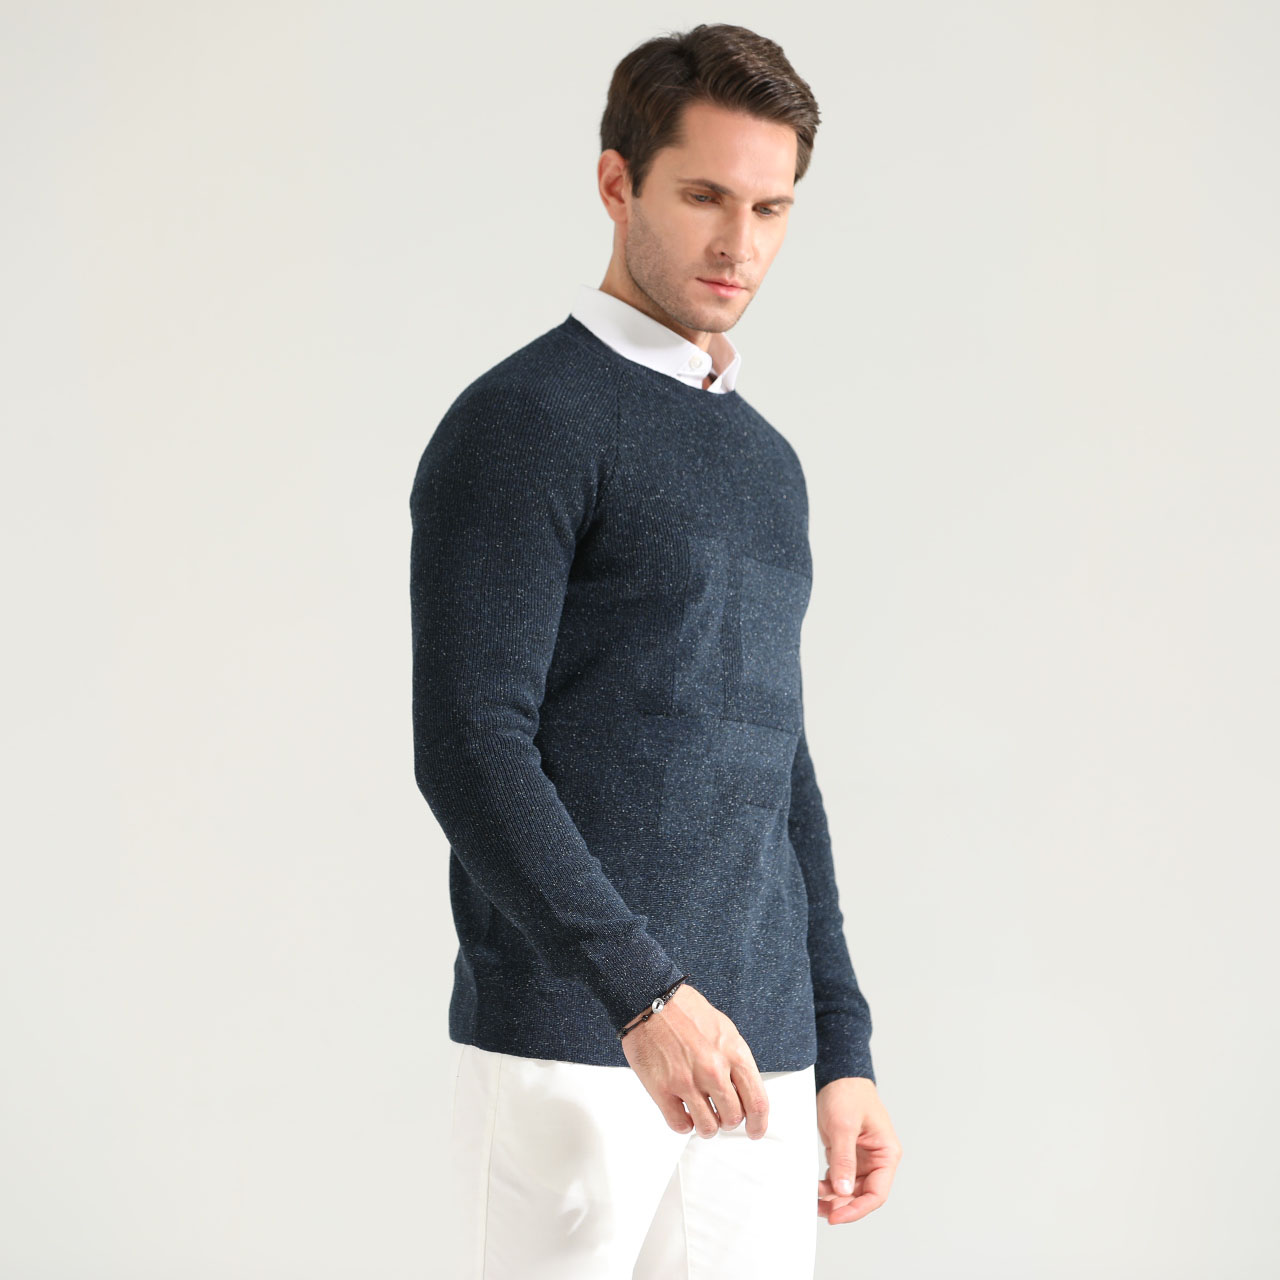 Mens Intarsia Cardigan knit Custom Pattern Jacquard Sweater